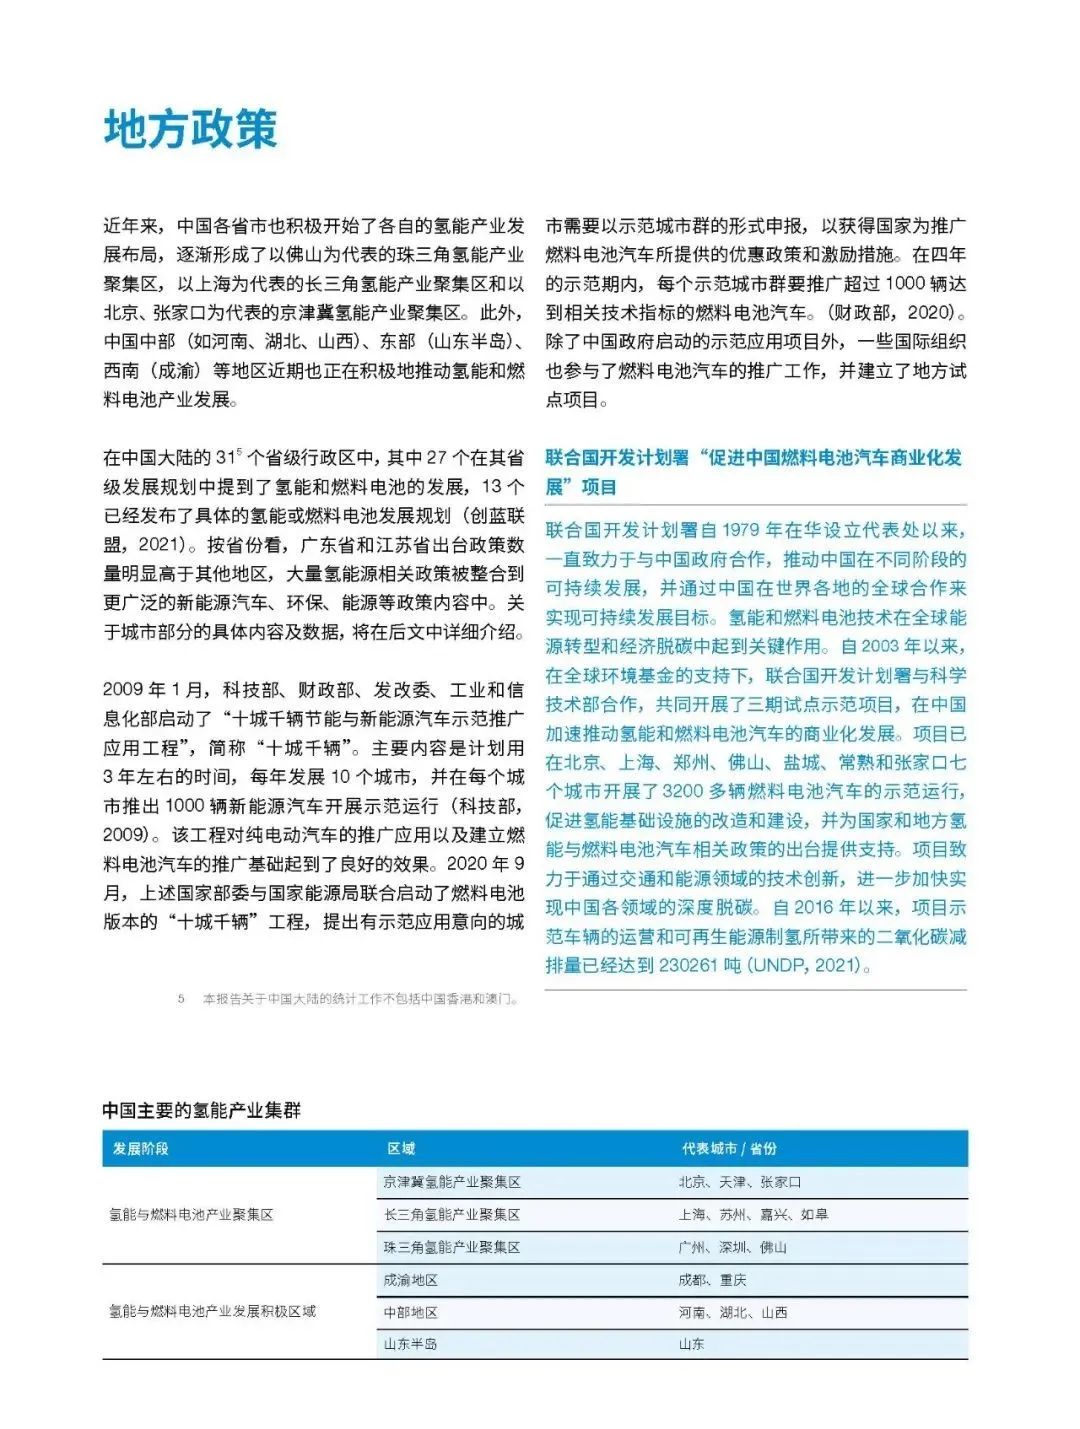 氢燃料电池技术在中国的开发和应用进展报告